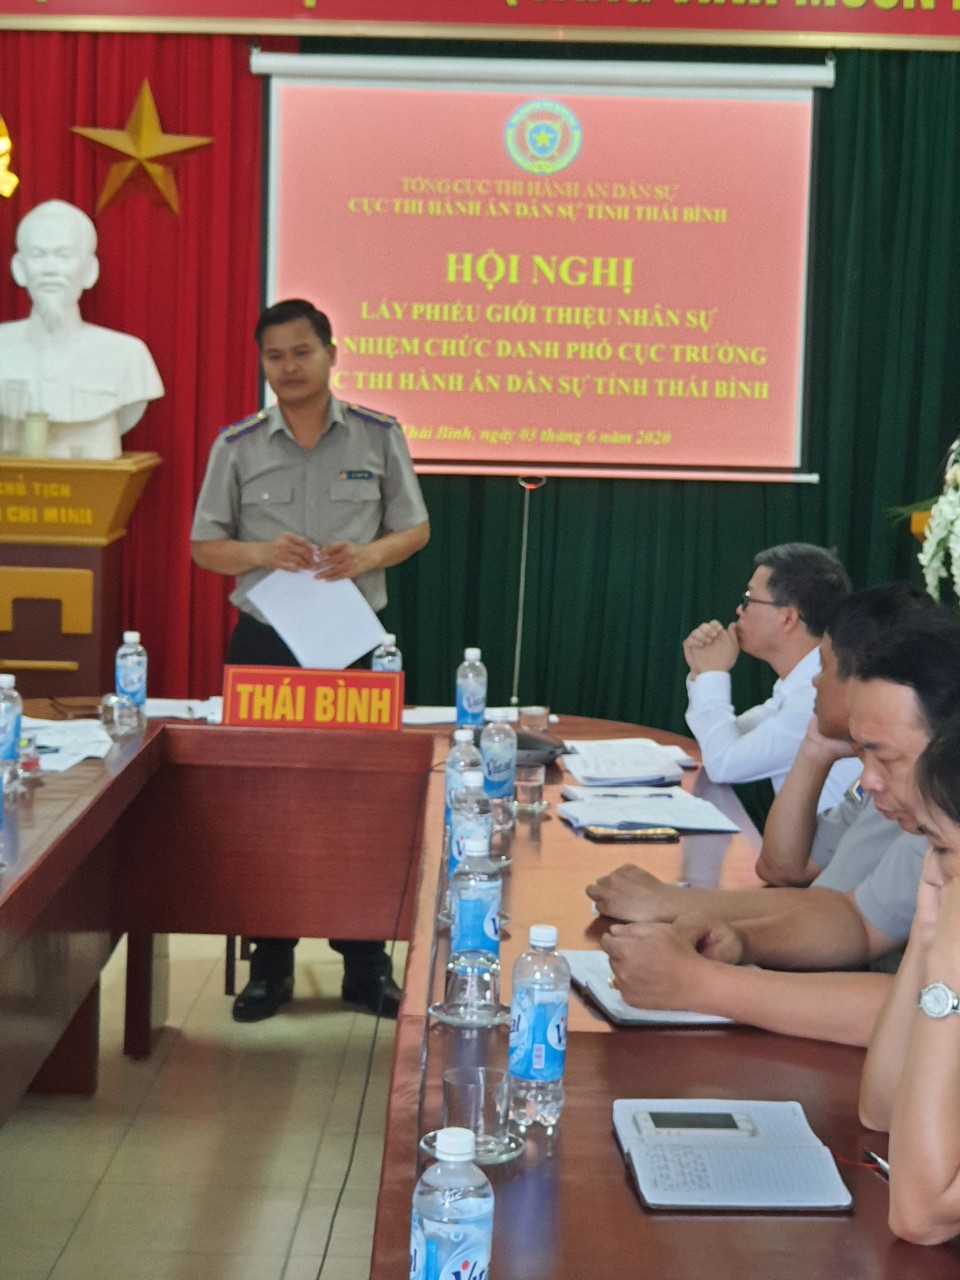 Cục THADS tỉnh Thái Bình tổ chức Hội nghị về công tác cán bộ